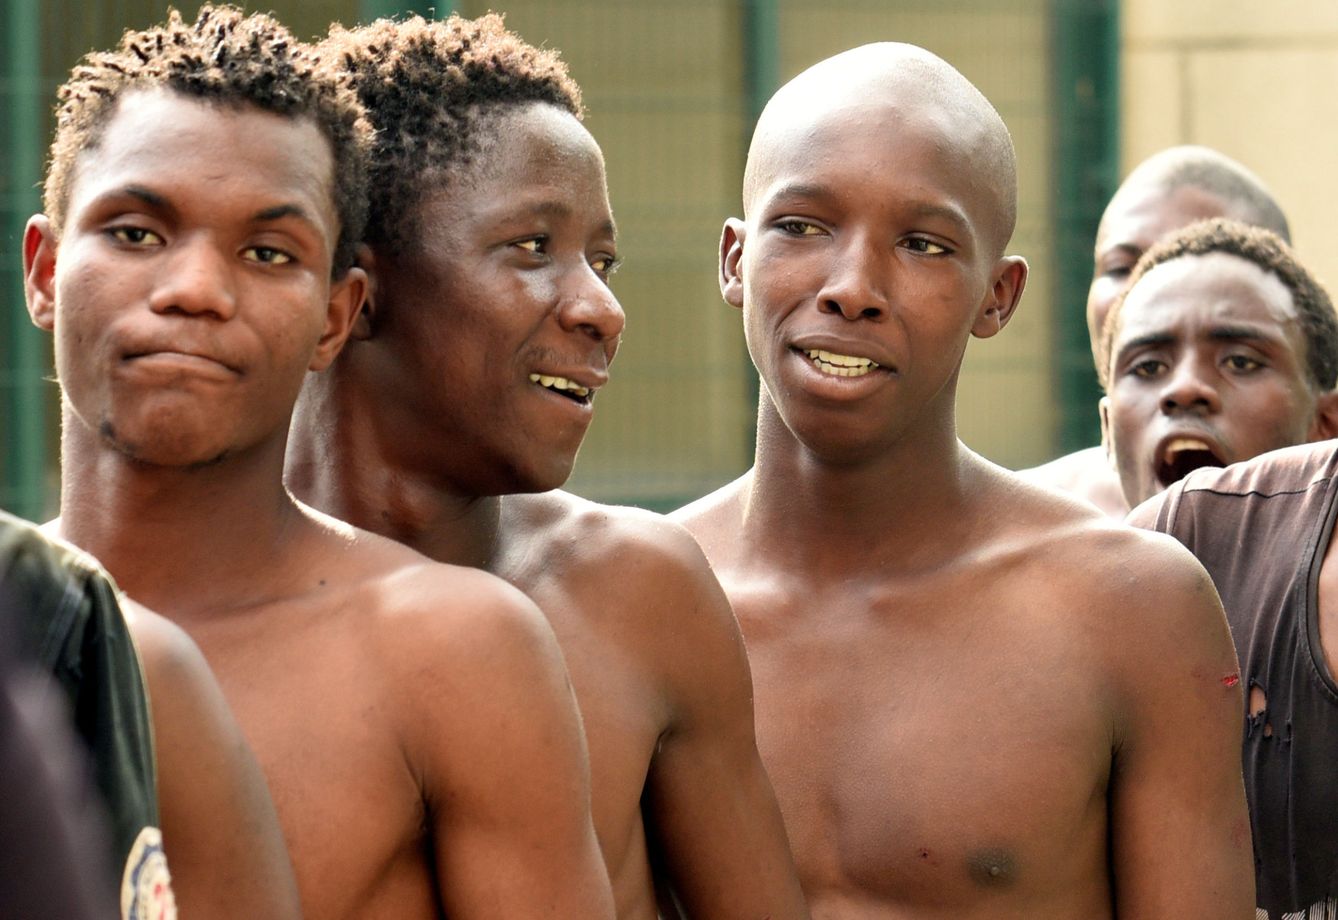 Jovenes migrantes tras saltar la valla (REUTERS)